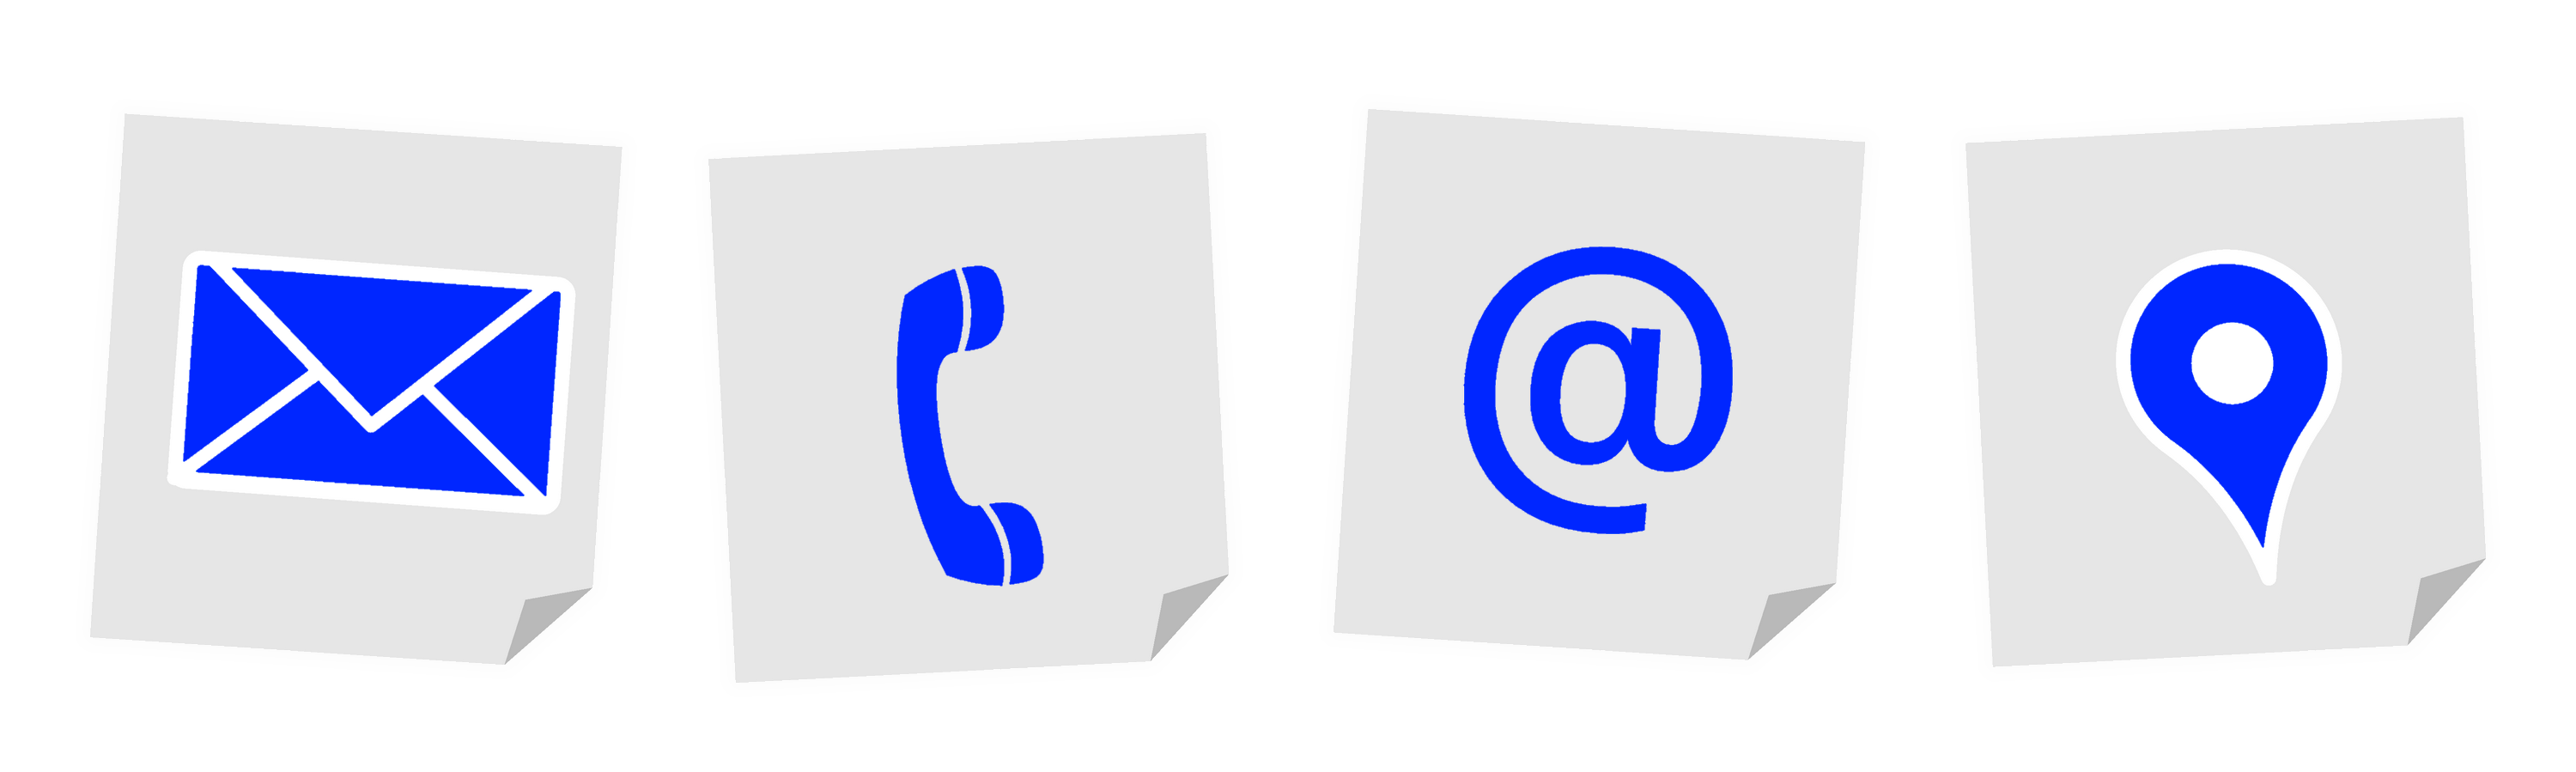 icone-contatti-blu